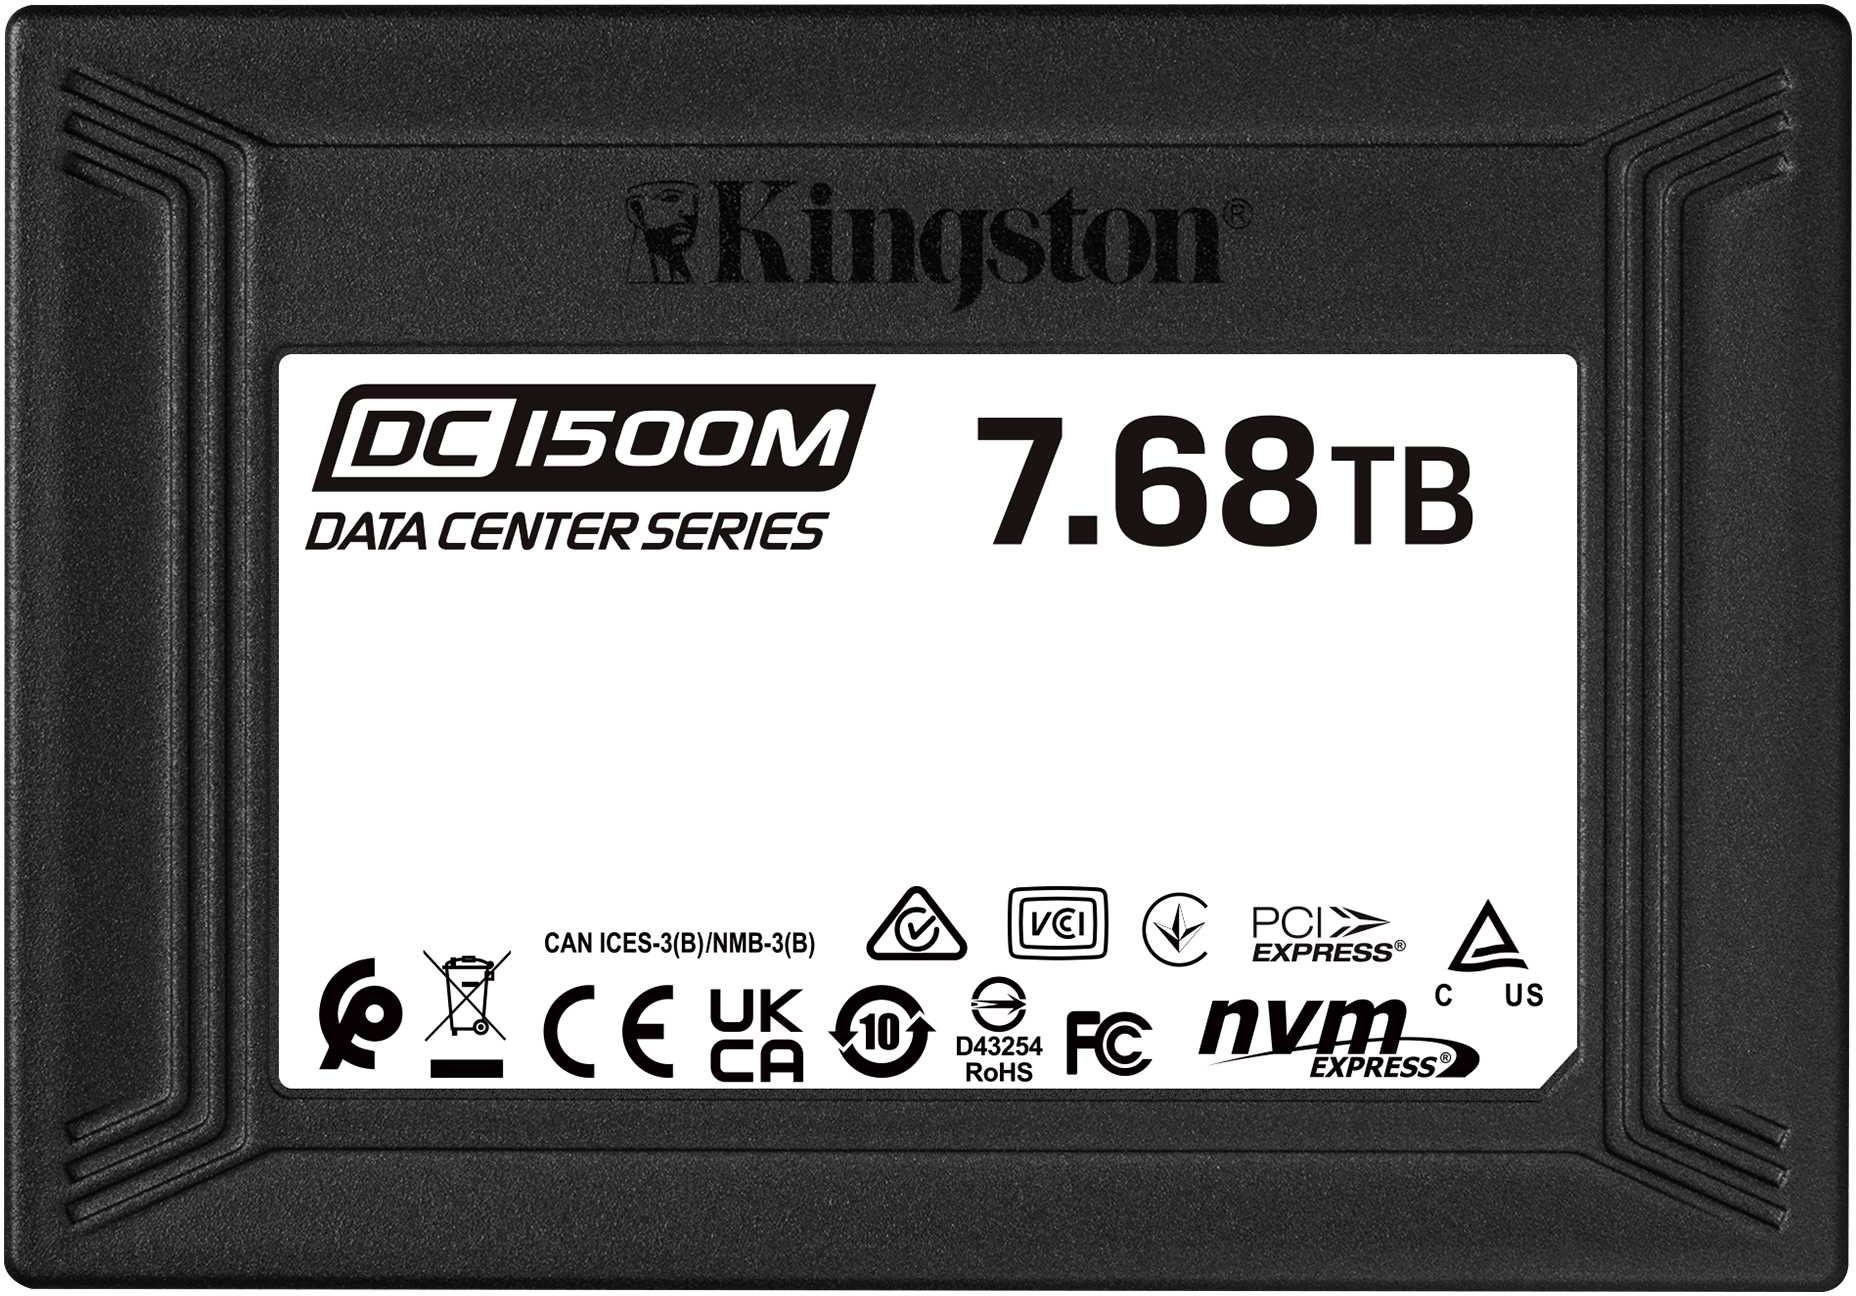 SSD  Kingston DC1500M SEDC1500M/7680G 7.7, 2.5, PCI-E 3.0,  NVMe,  U.2 SFF-8639